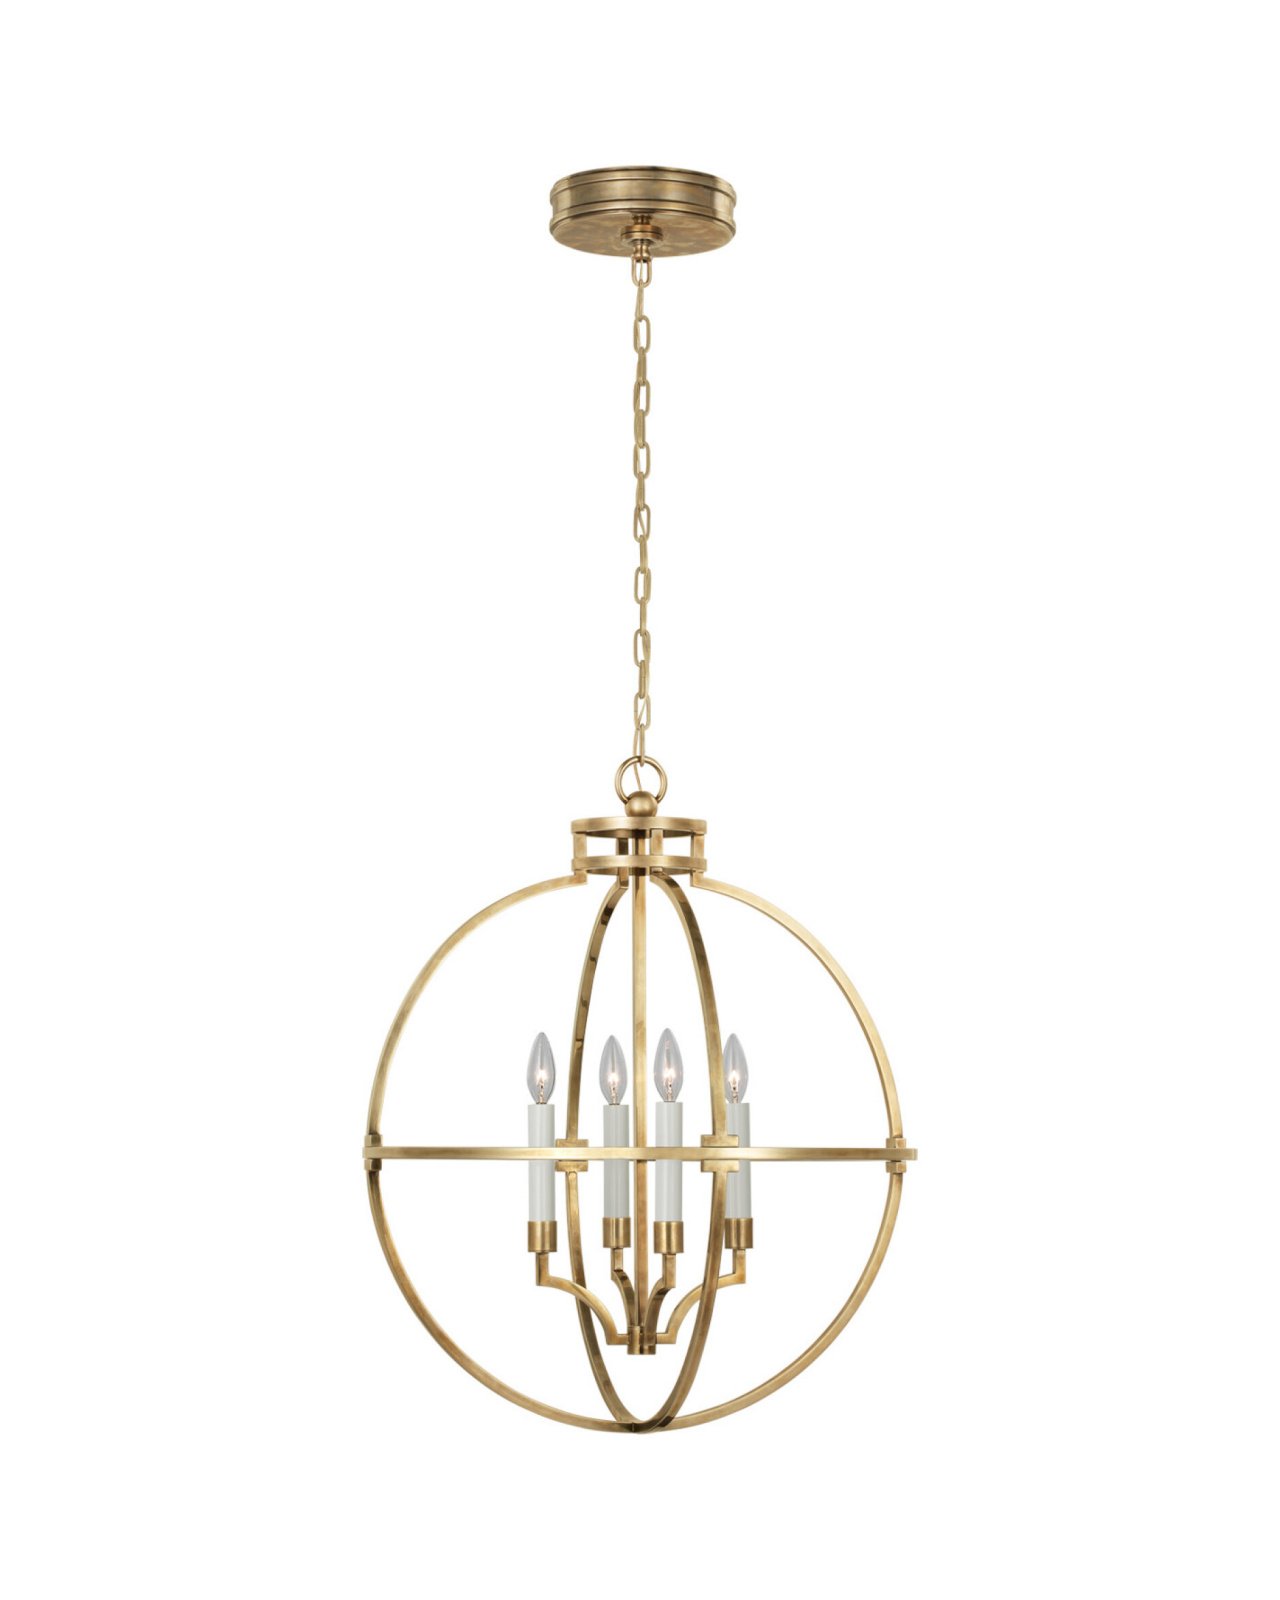 Lexie 24" Globe Lantern Antique Brass